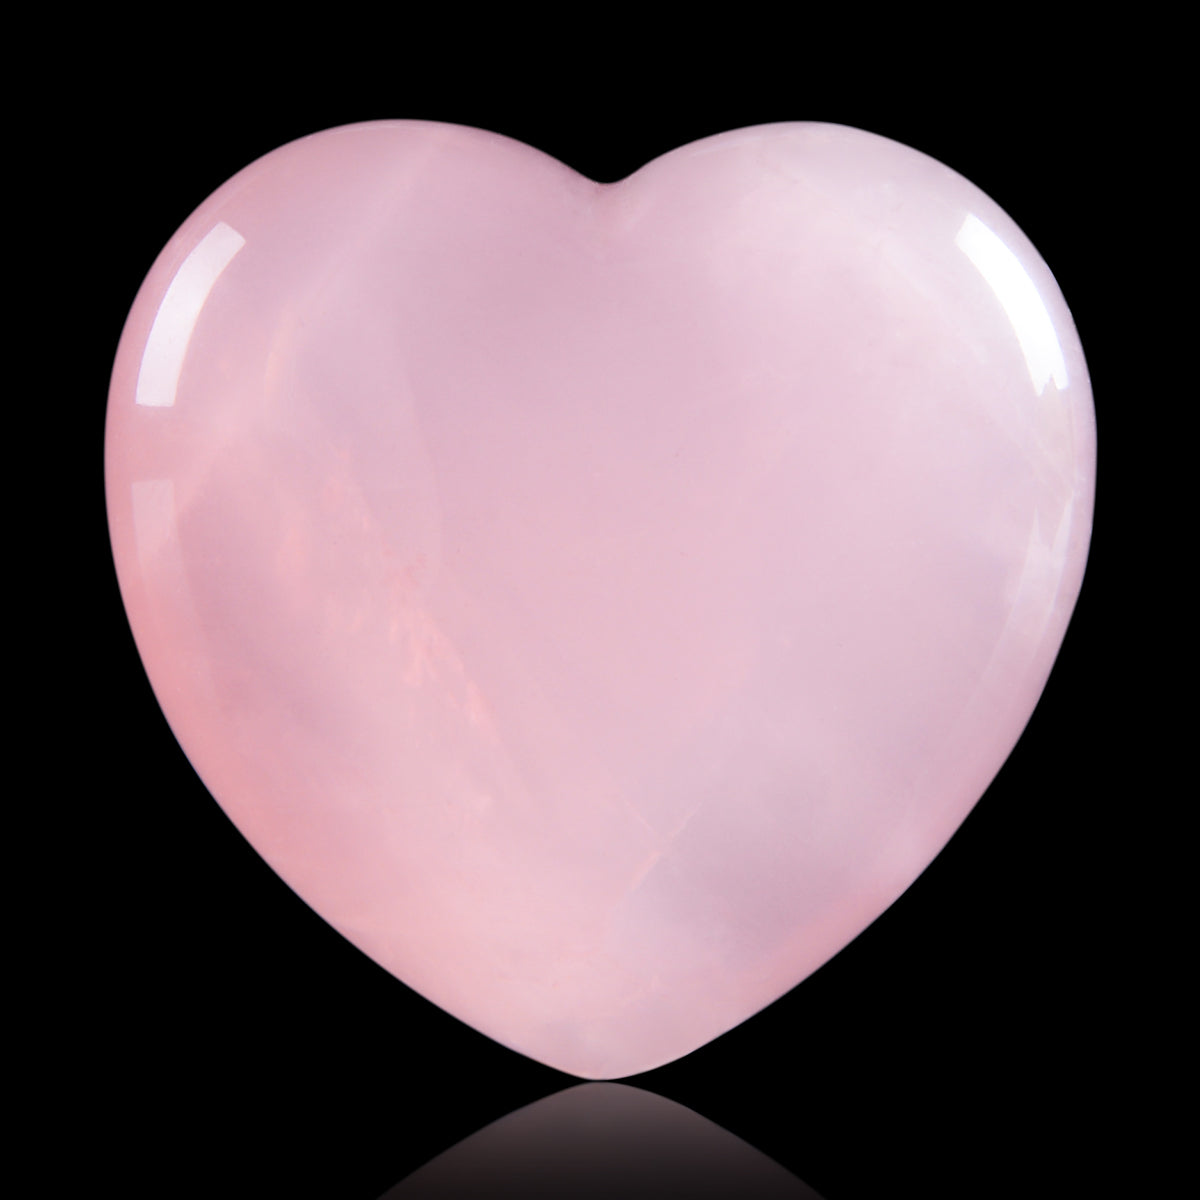 mimosa-rose-quartz-heart-chakra-1pcs-set